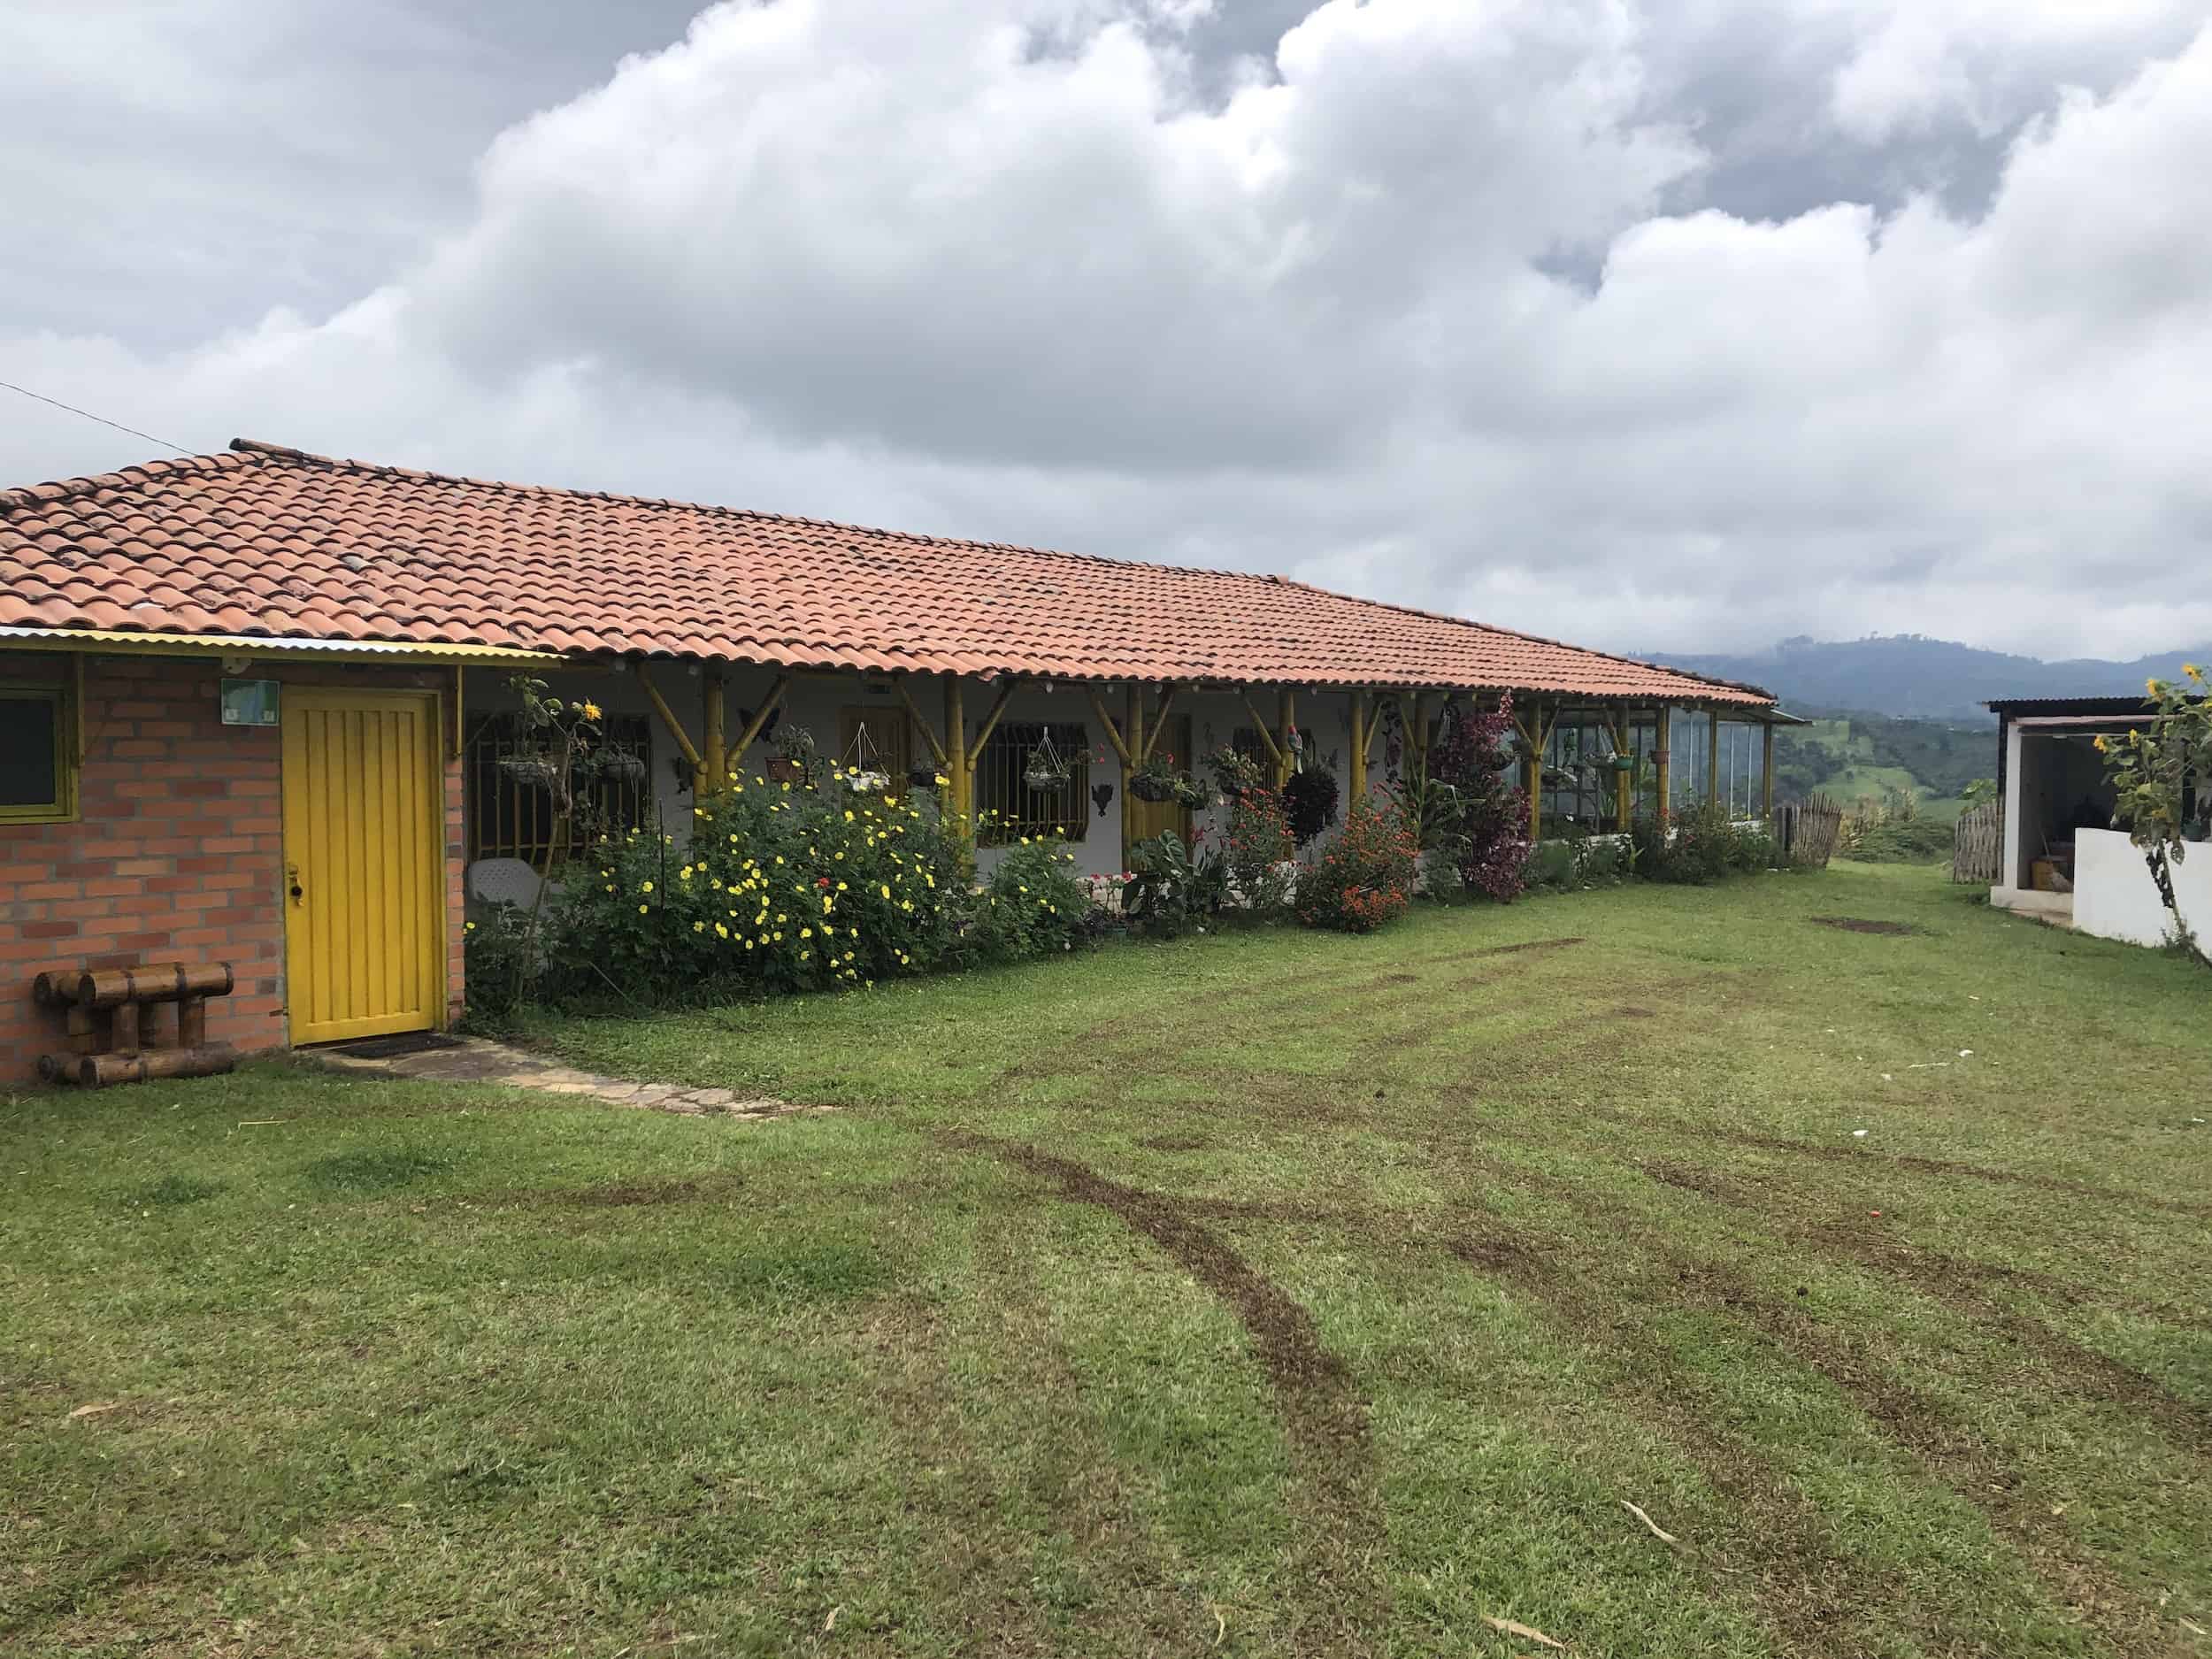 Main house at Ecohotel Spa Caucayá in Belén de Umbría, Risaralda, Colombia